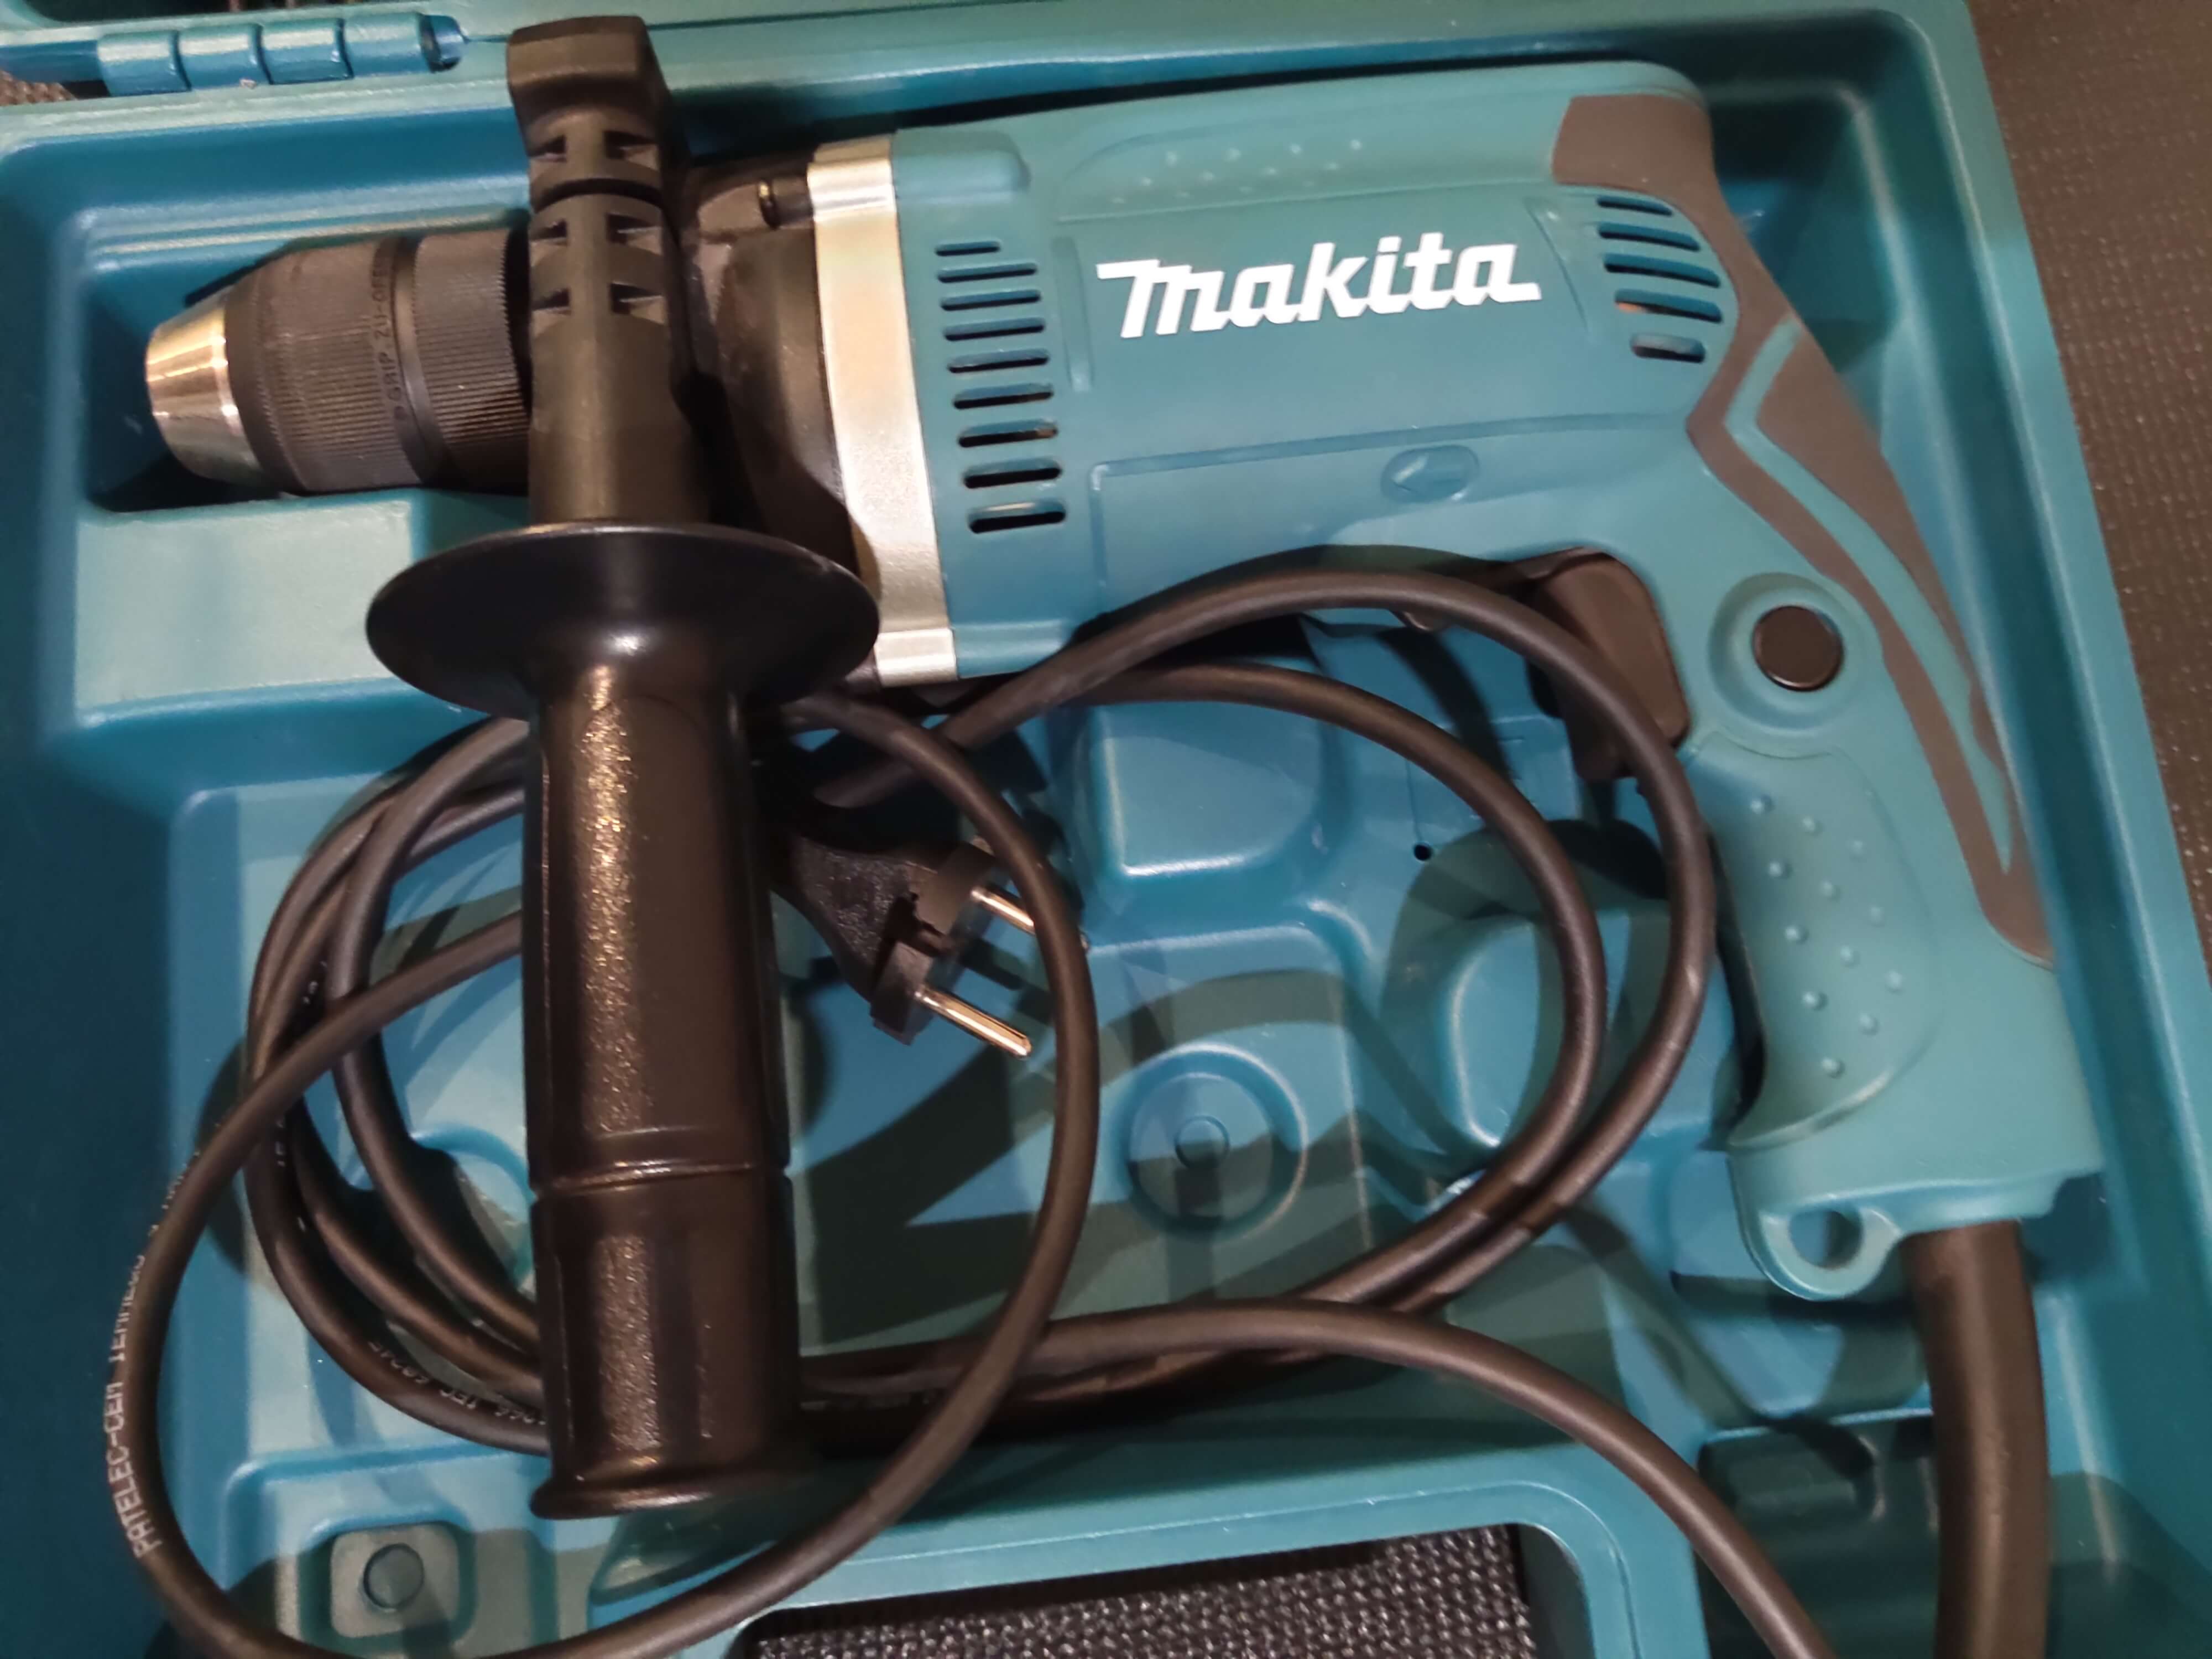 Schlagbohrmaschine Makita mit Zubehör - 2900ab99-e843-47ce-ba01-16e45d28866c